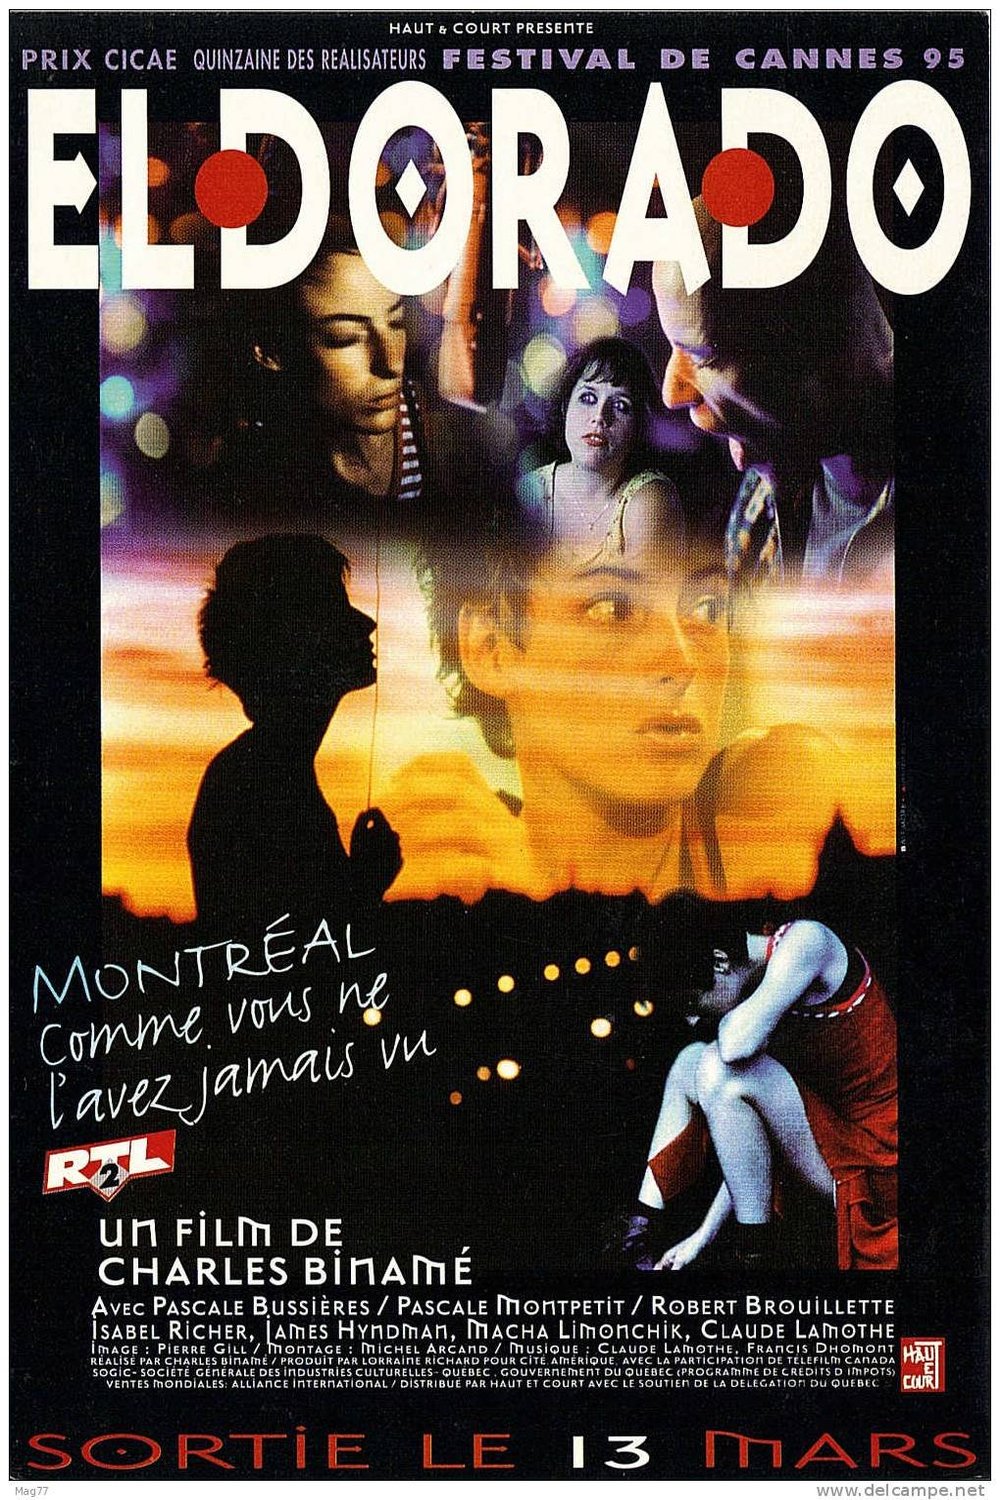 Poster of the movie Eldorado